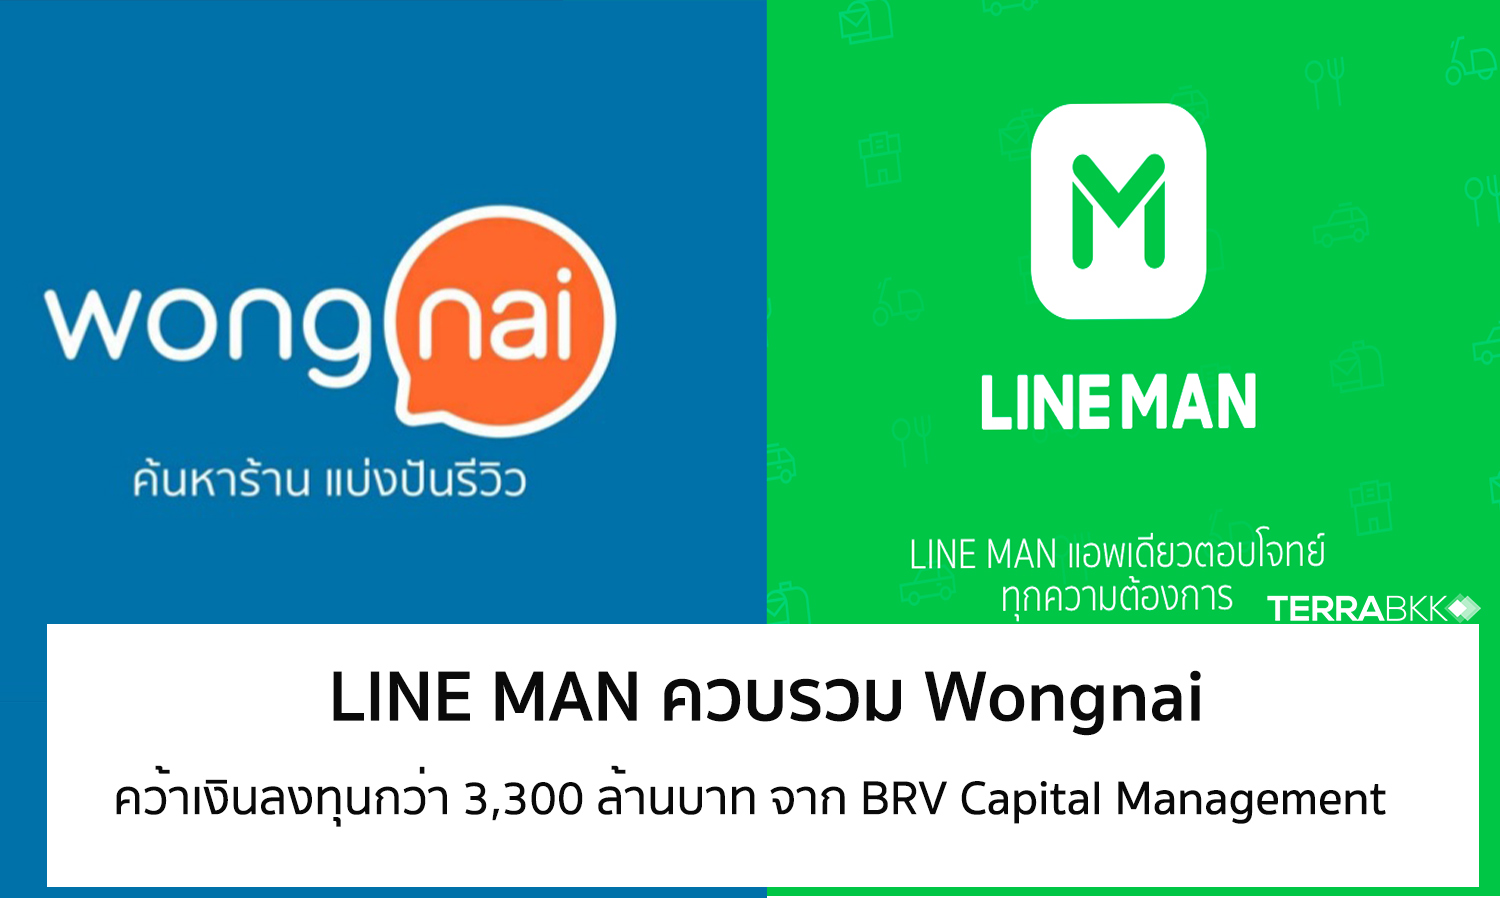 line-man-ควบรวม-wongnai-ผนึกกำลัง-สู่การเป็น-“ผู้ช่วยเบอร์หนึ่ง”-ที่แข็งแกร่งที่สุดเพื่อคนไทย